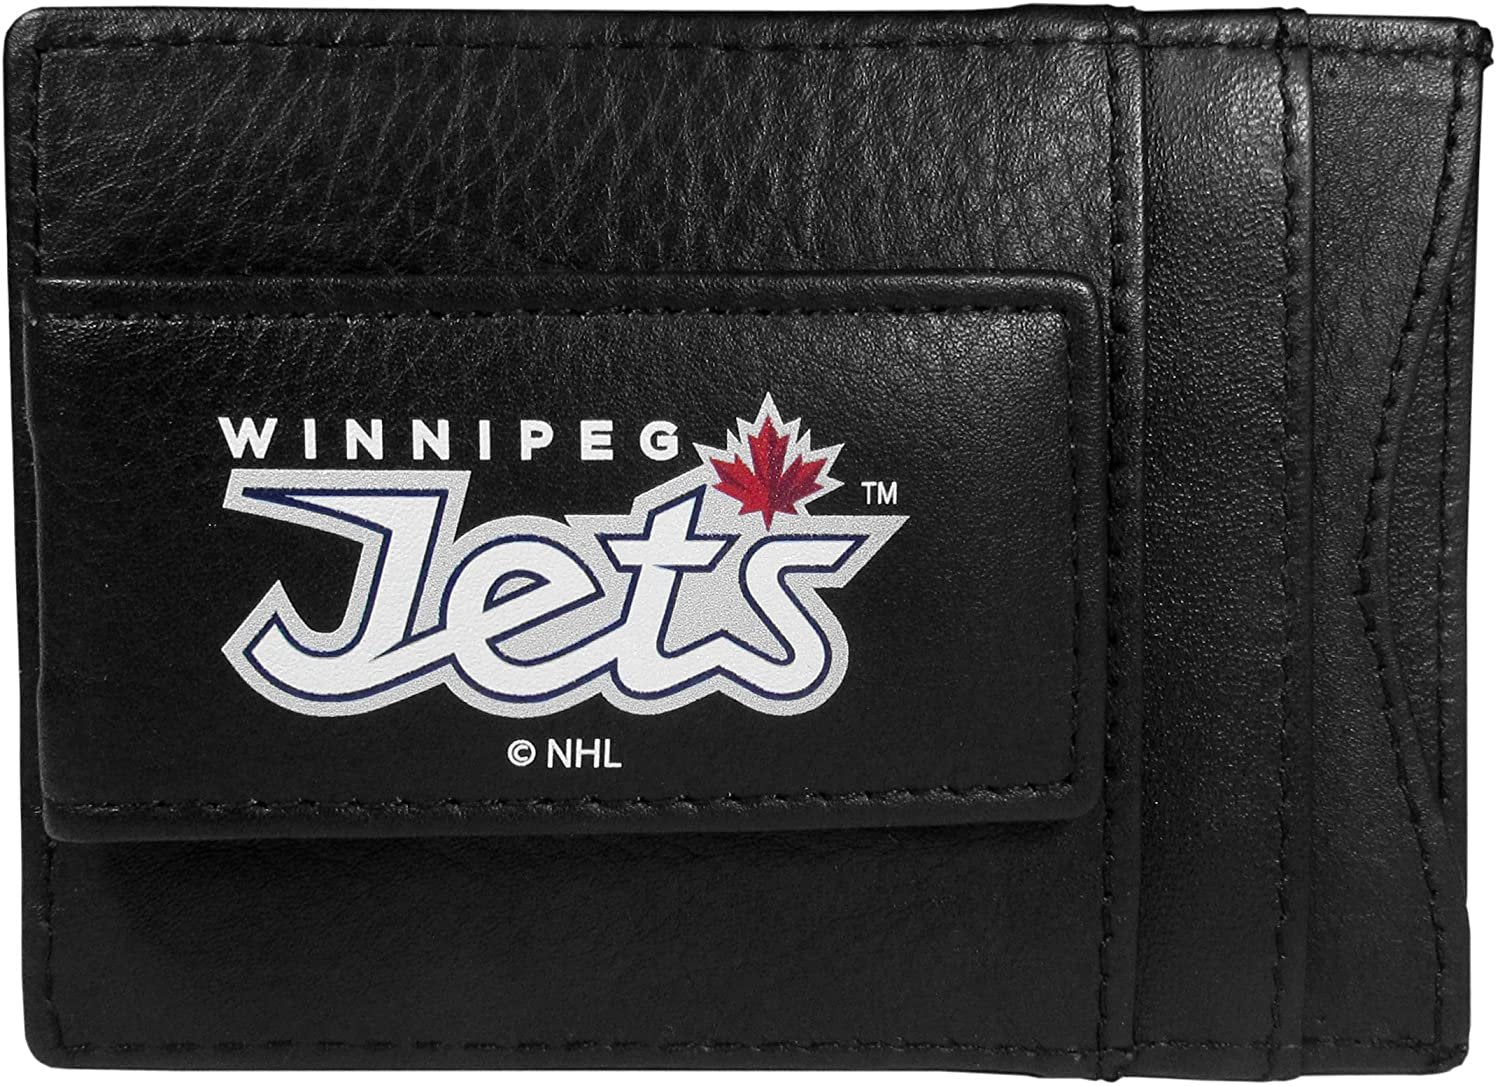 Winnipeg Jets Black Leather Wallet, Front Pocket Magnetic Money Clip, Printed Logo